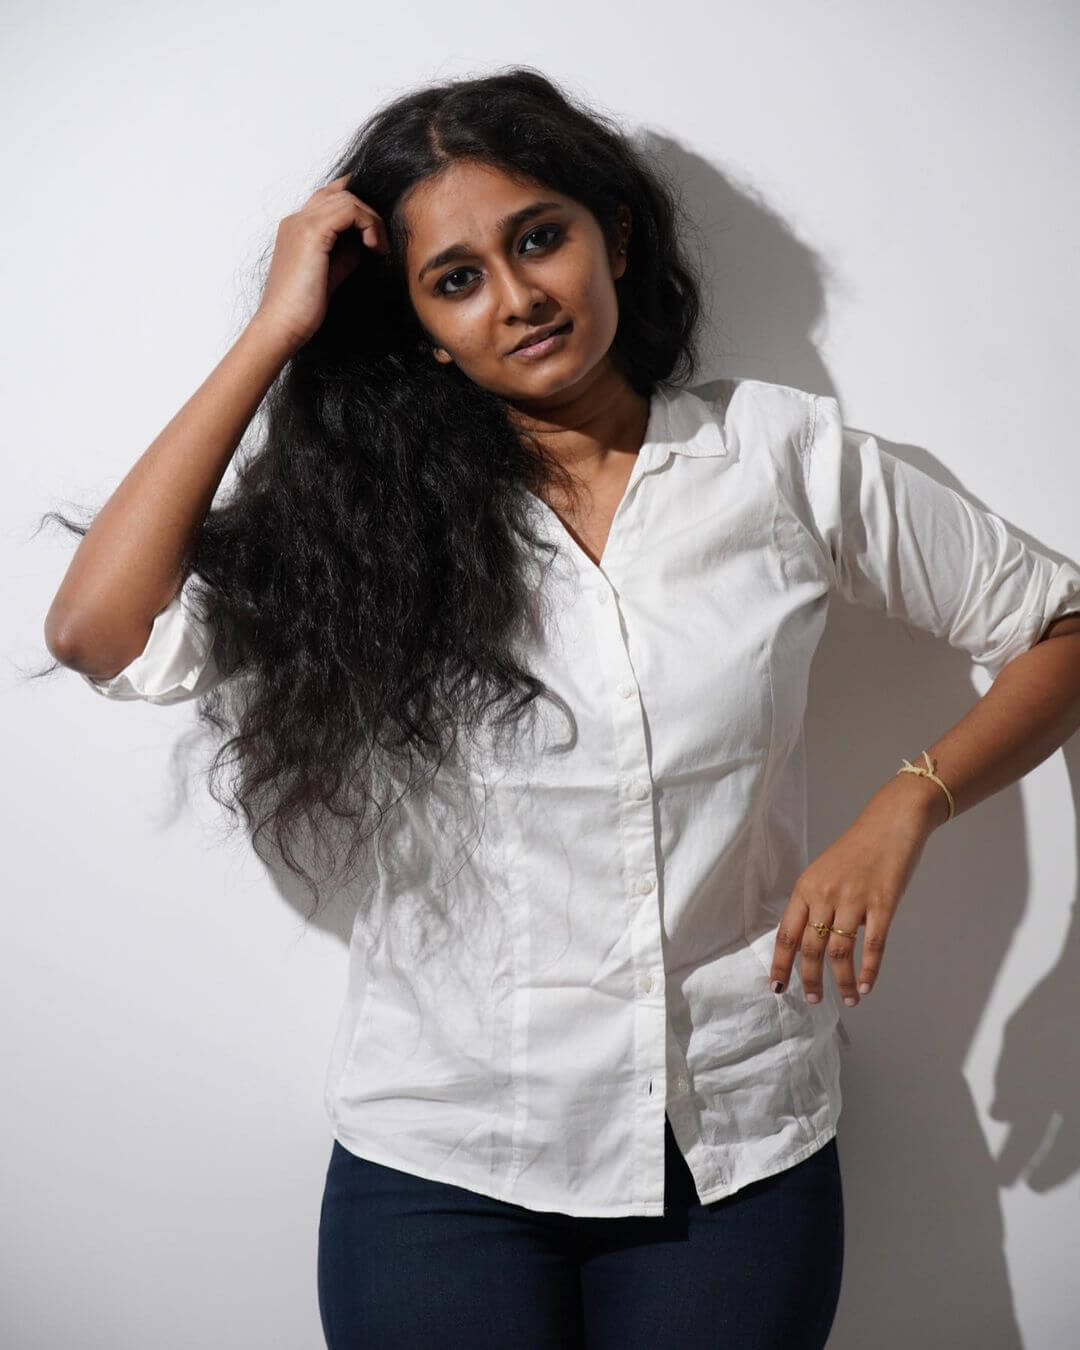 Actress Devadharshini Balamurugan in white shirt and black pant